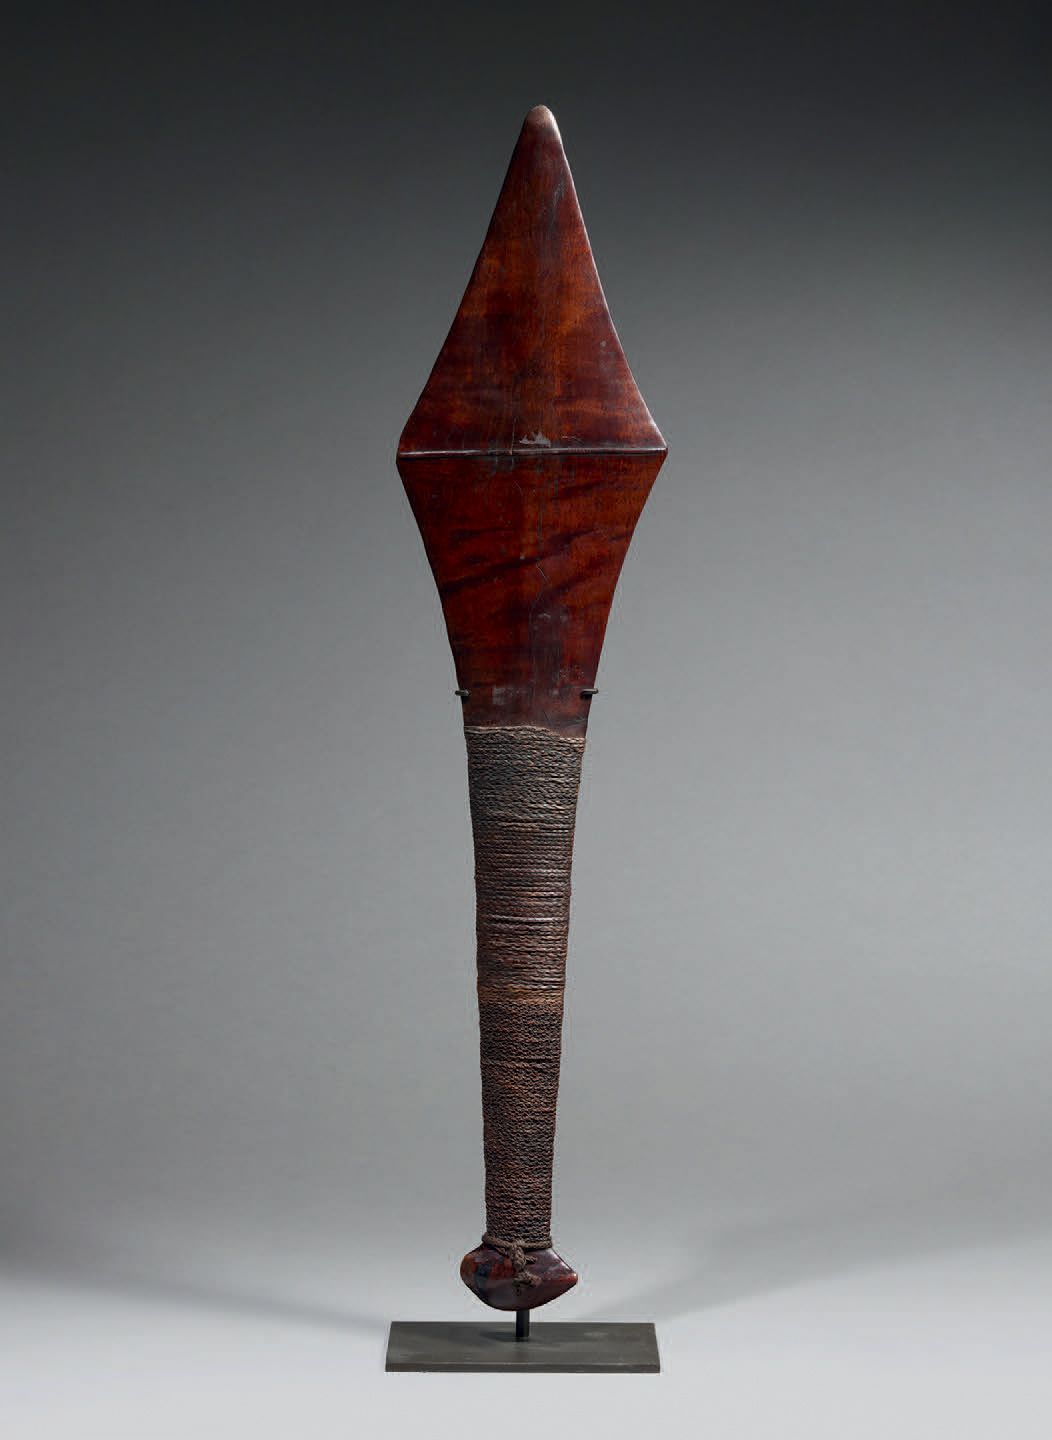 Null Supe俱乐部
所罗门群岛，马莱塔
木头，植物纤维 长71.5厘米
来自马莱塔的古老俱乐部，形状是一个拉长的钻石，用美丽的木头雕刻，有明显的脉络。武器&hellip;